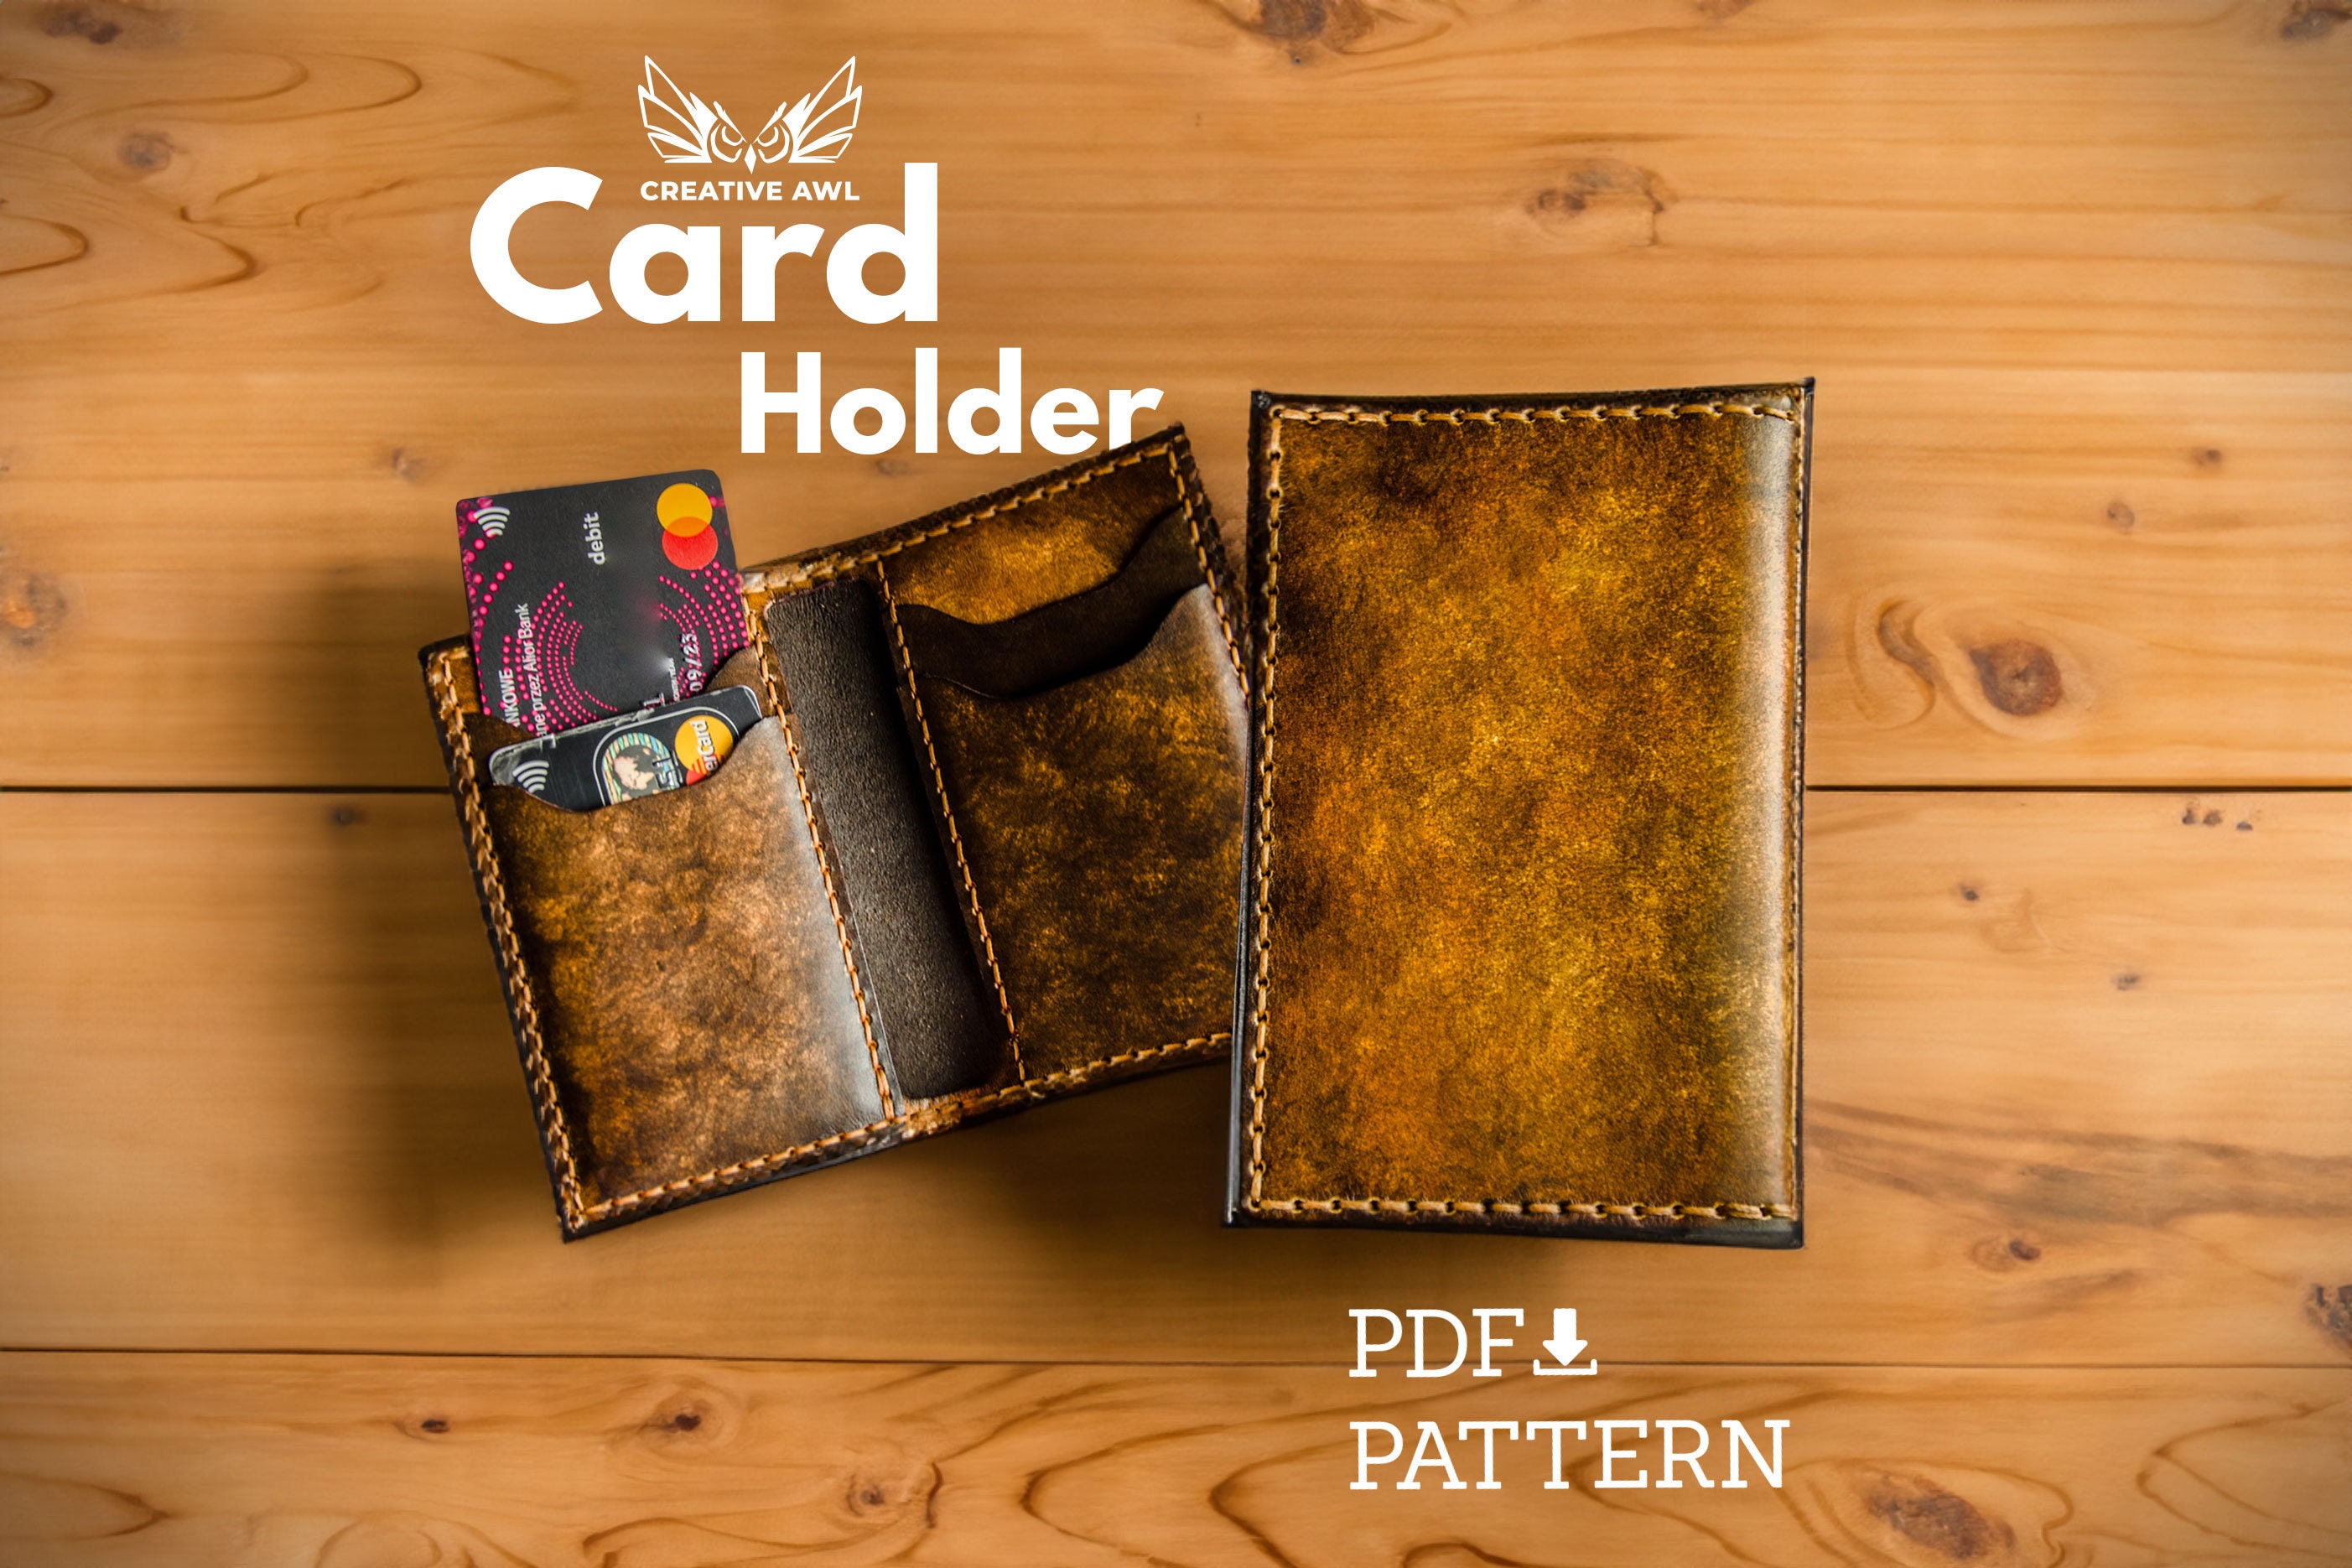 Fauré Le Page Entendard 4CC Monogram Pattern Card Holder - Black Wallets,  Accessories - FLP20690